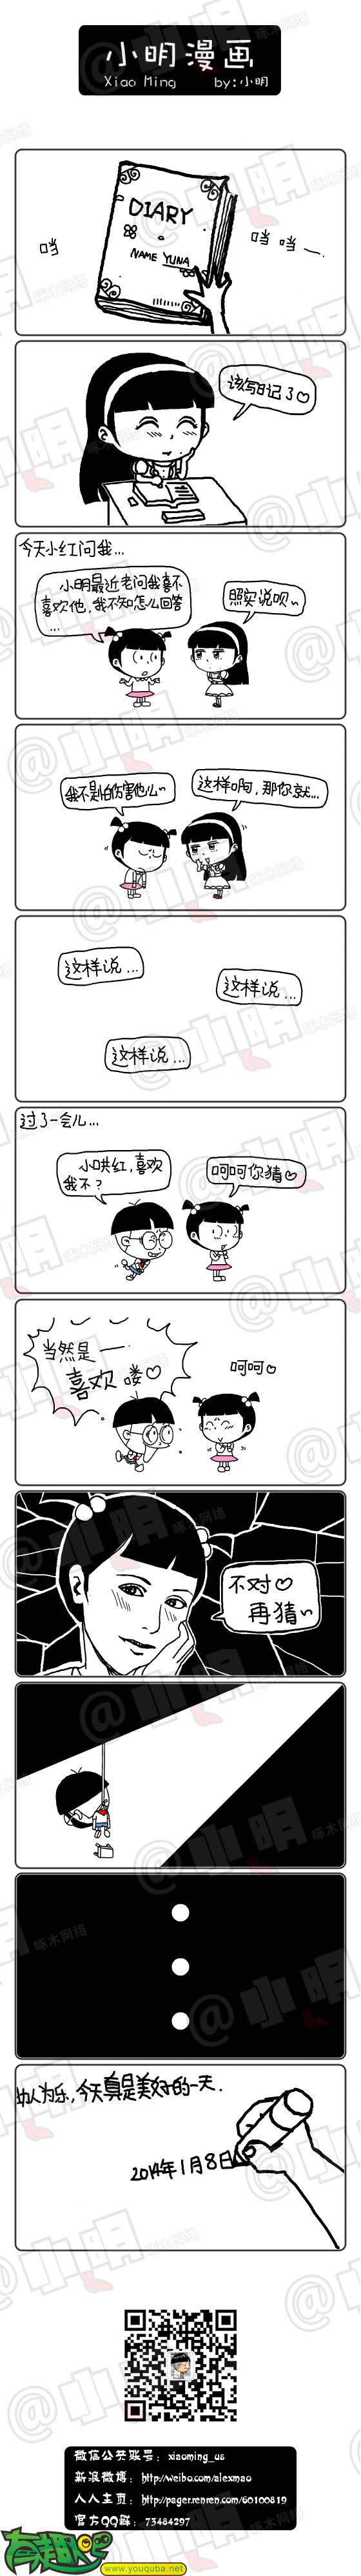 小明系列漫画:你猜